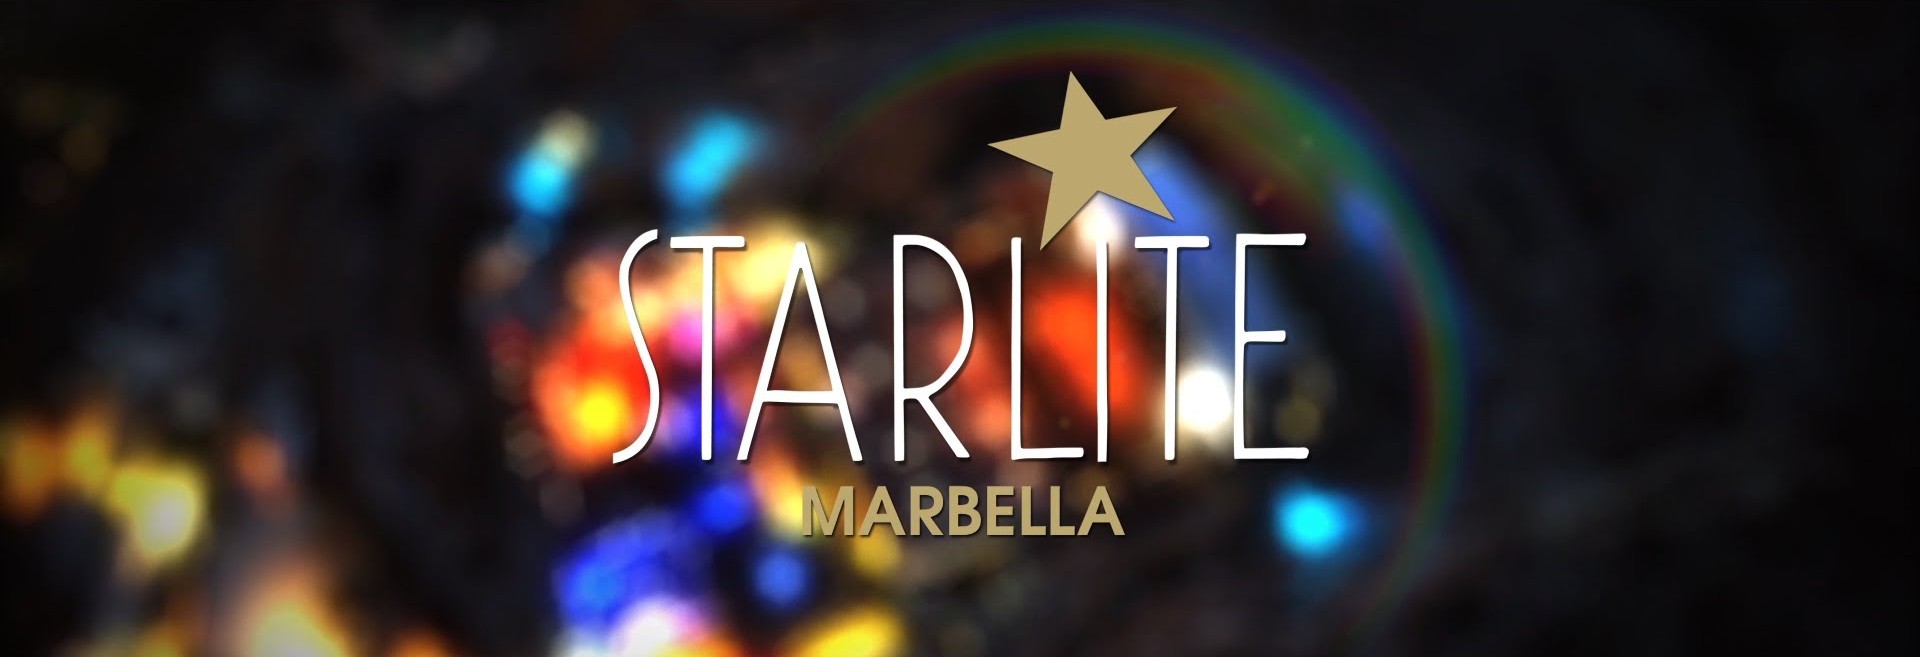 Marbella Unique Properties en Starlite Festival